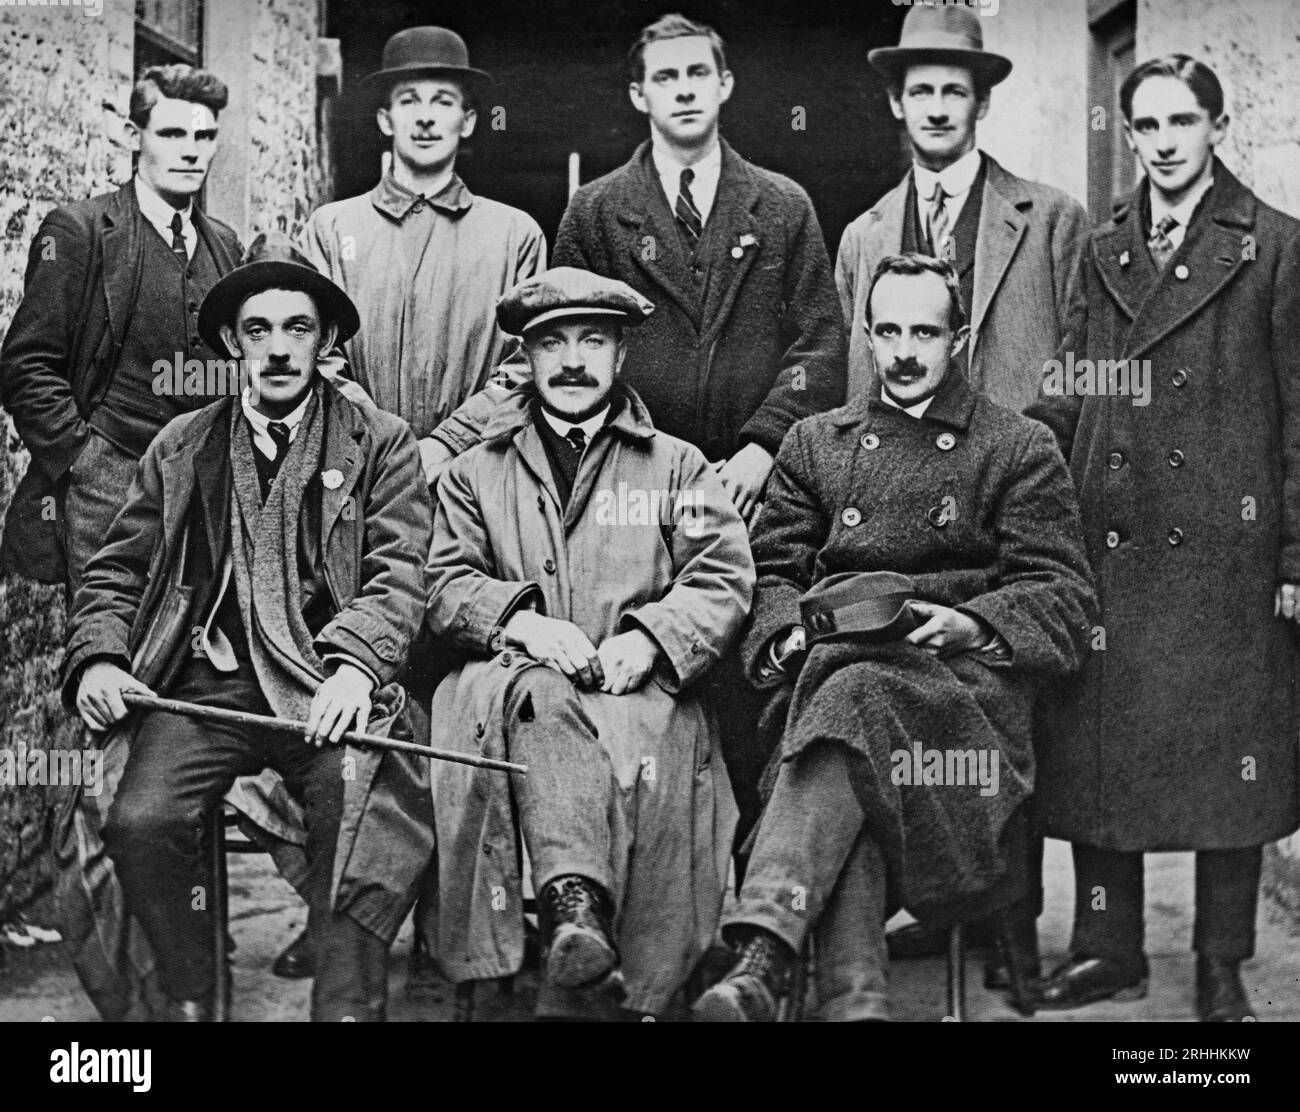 Une photographie du début du 20e siècle des délégués du Sinn Féin de Cork qui ont négocié à Dublin en 1919. Parmi ceux-ci figuraient Tomás Mac Curtain, abattu plus tard à son domicile par la RIC (Royal Irish Constabulary) et Terence McSwiney, mort en grève de la faim à la prison de Brixton, en Angleterre. Banque D'Images